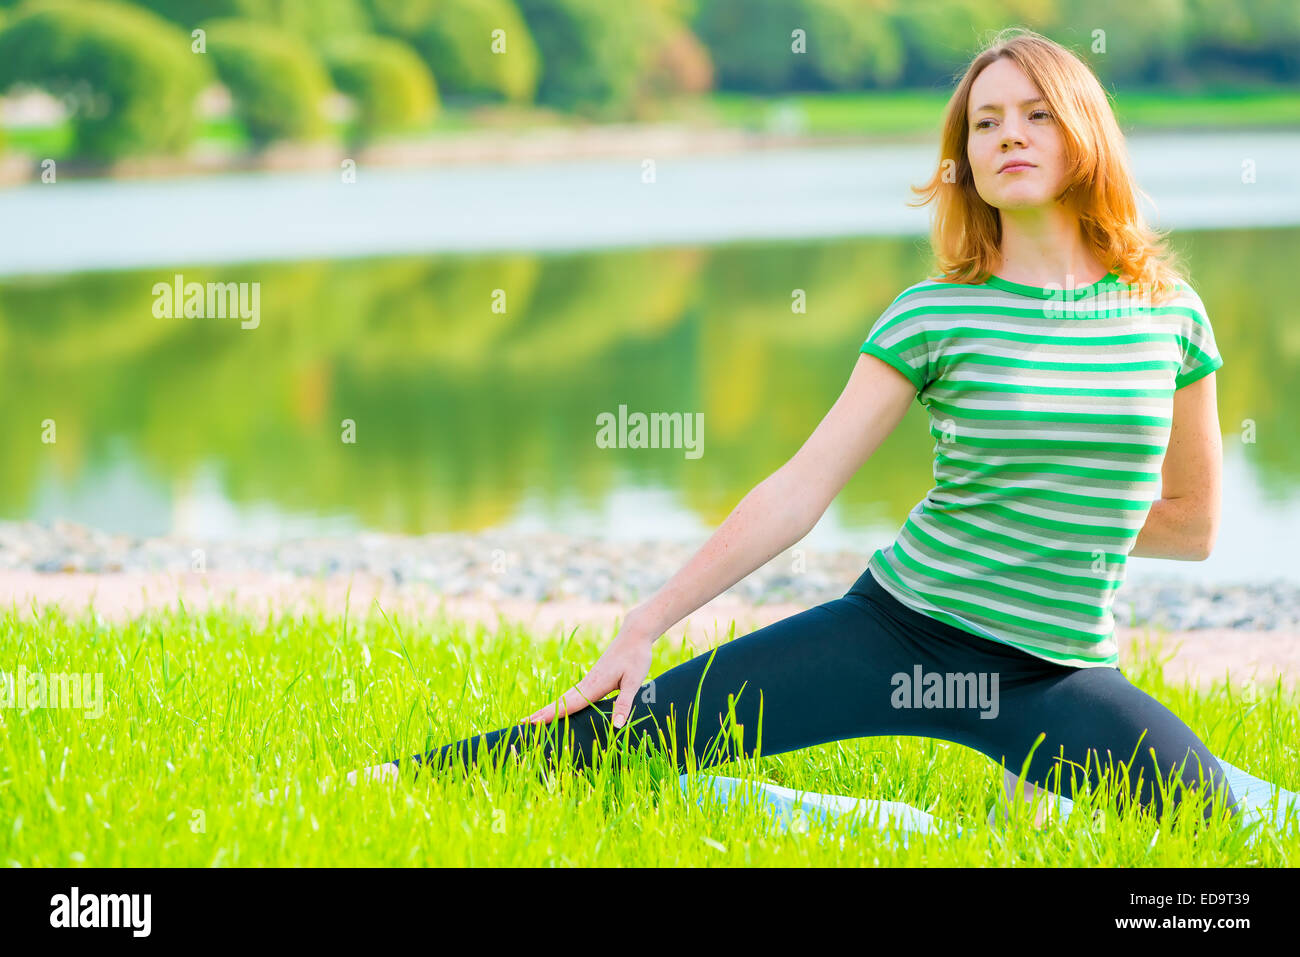 Sportlerinnen haben Übungen auf dem grünen Rasen im park Stockfoto